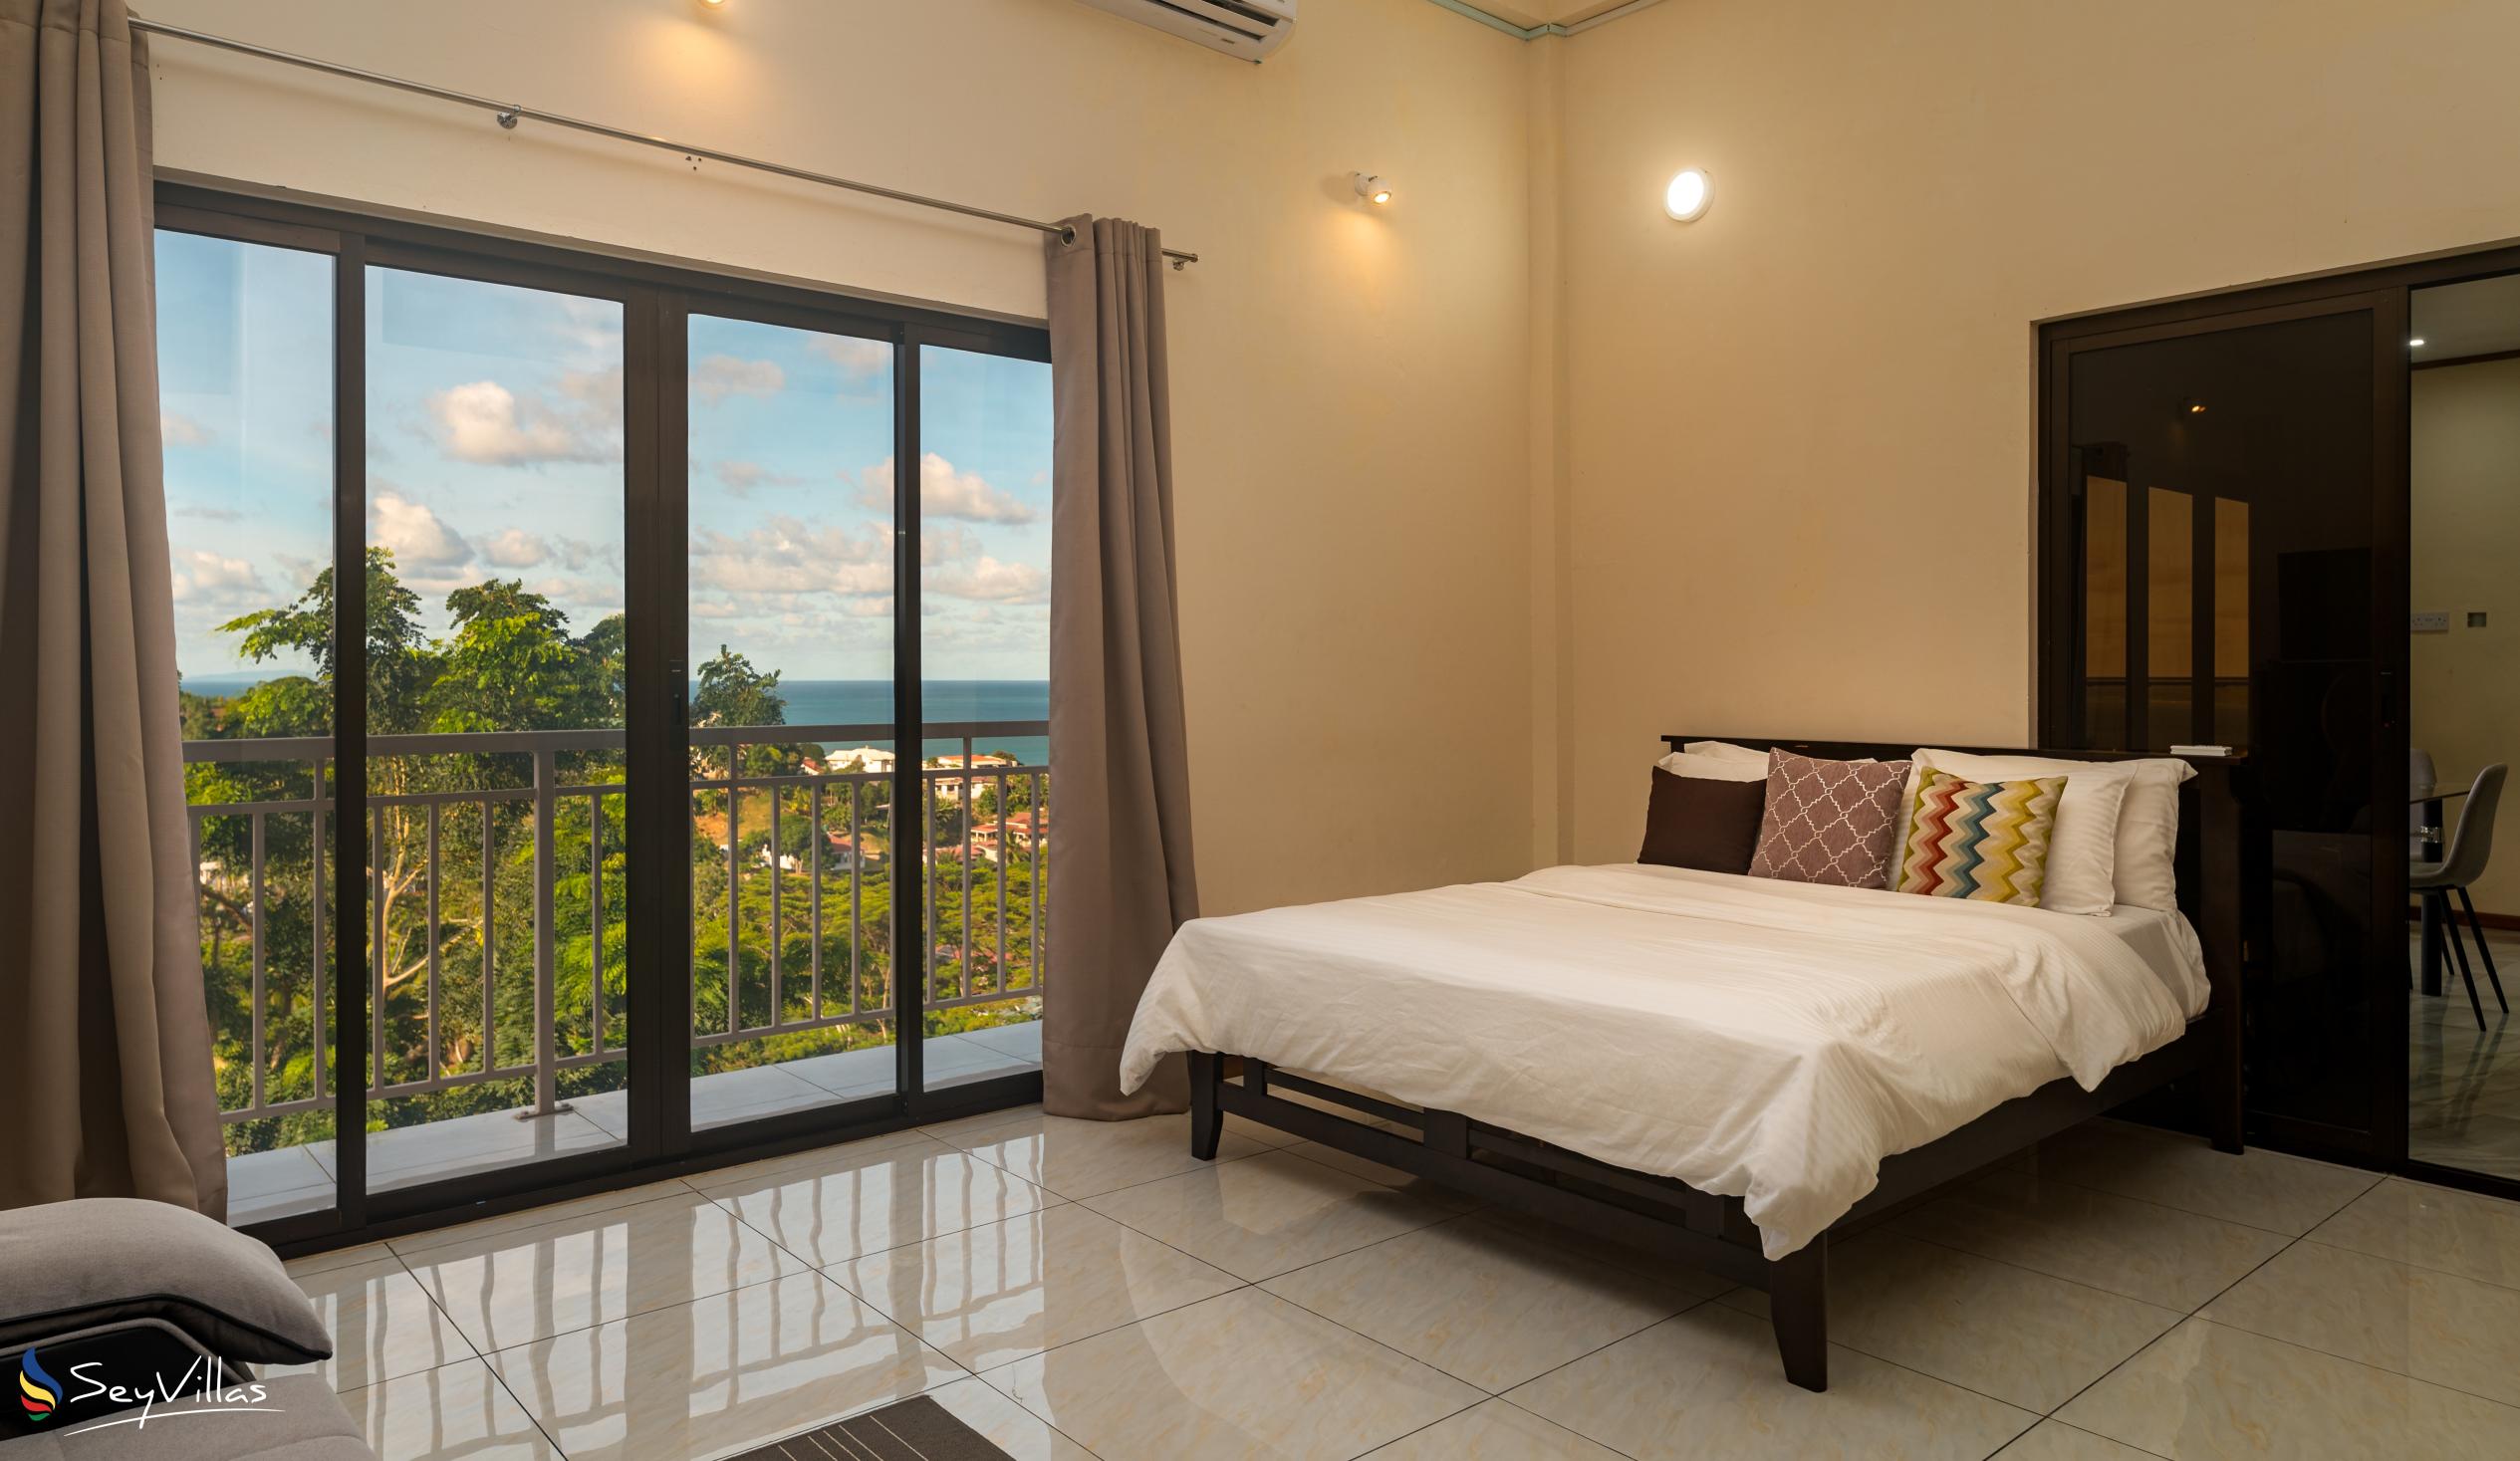 Foto 50: Maison L'Horizon - Appartement 1 chambre Lalin - Mahé (Seychelles)